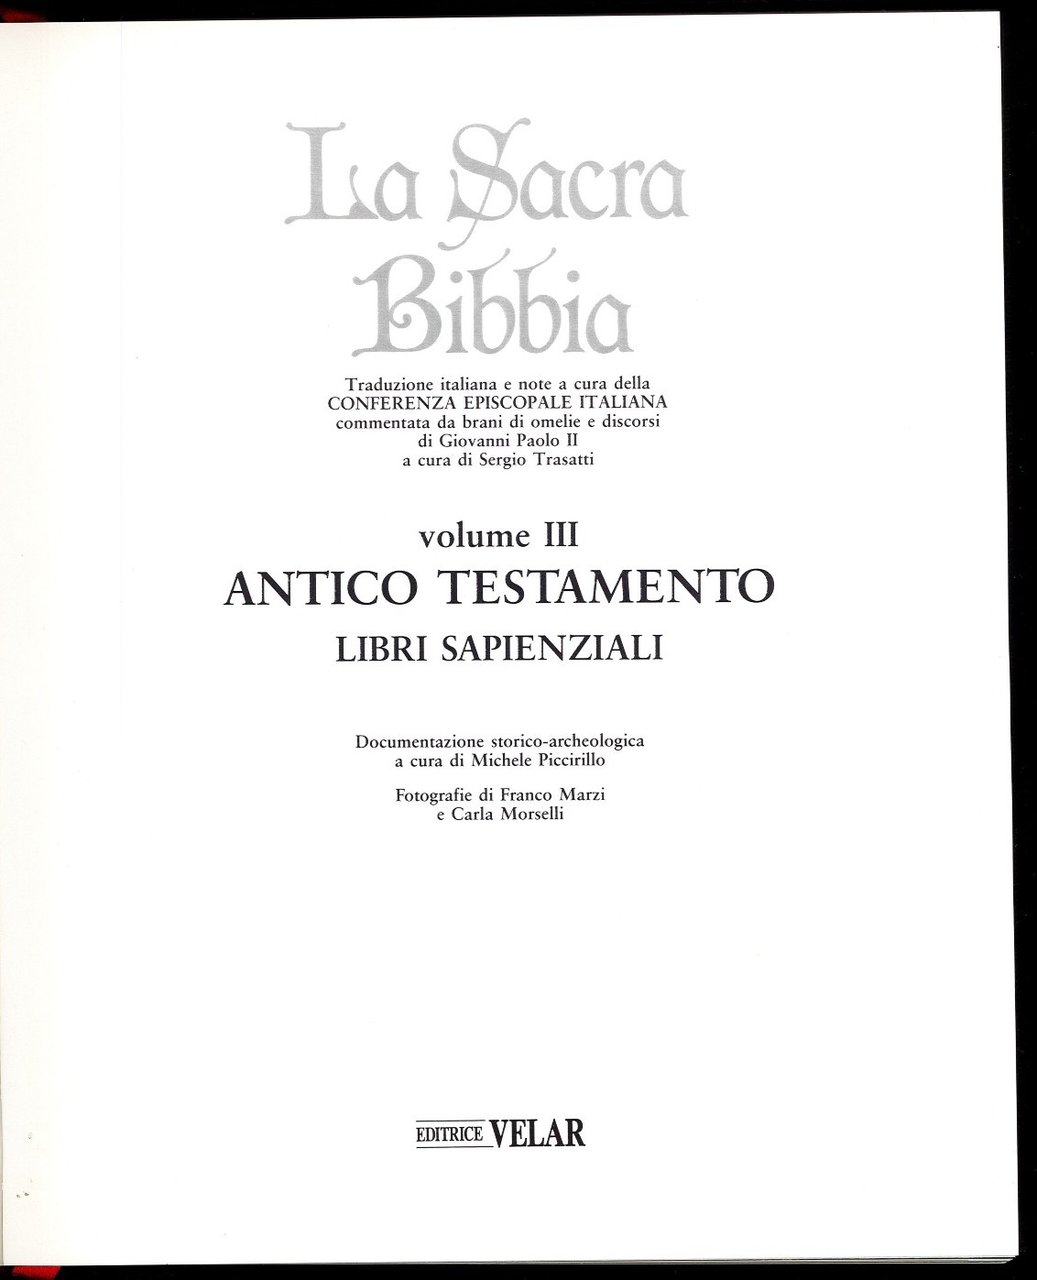 La Sacra Bibbia volume III. Antico testamento - Libri sapienziali